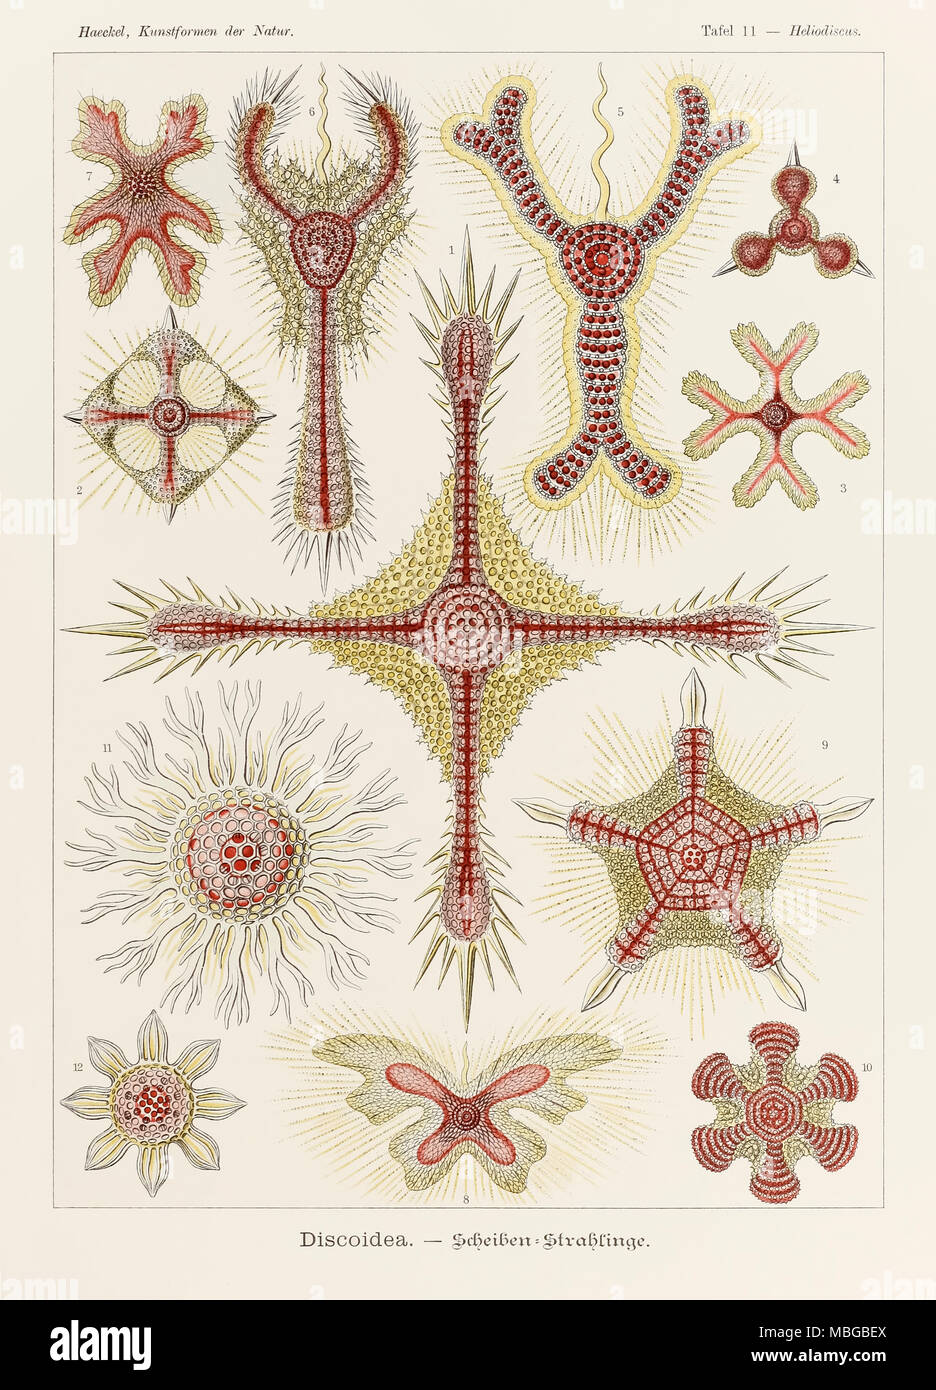 La piastra 11 Heliodiscus Discoidea da 'Kunstformen der Natur" (forme d'Arte nella Natura) illustrato da Ernst Haeckel (1834-1919). Vedere ulteriori informazioni qui di seguito. Foto Stock